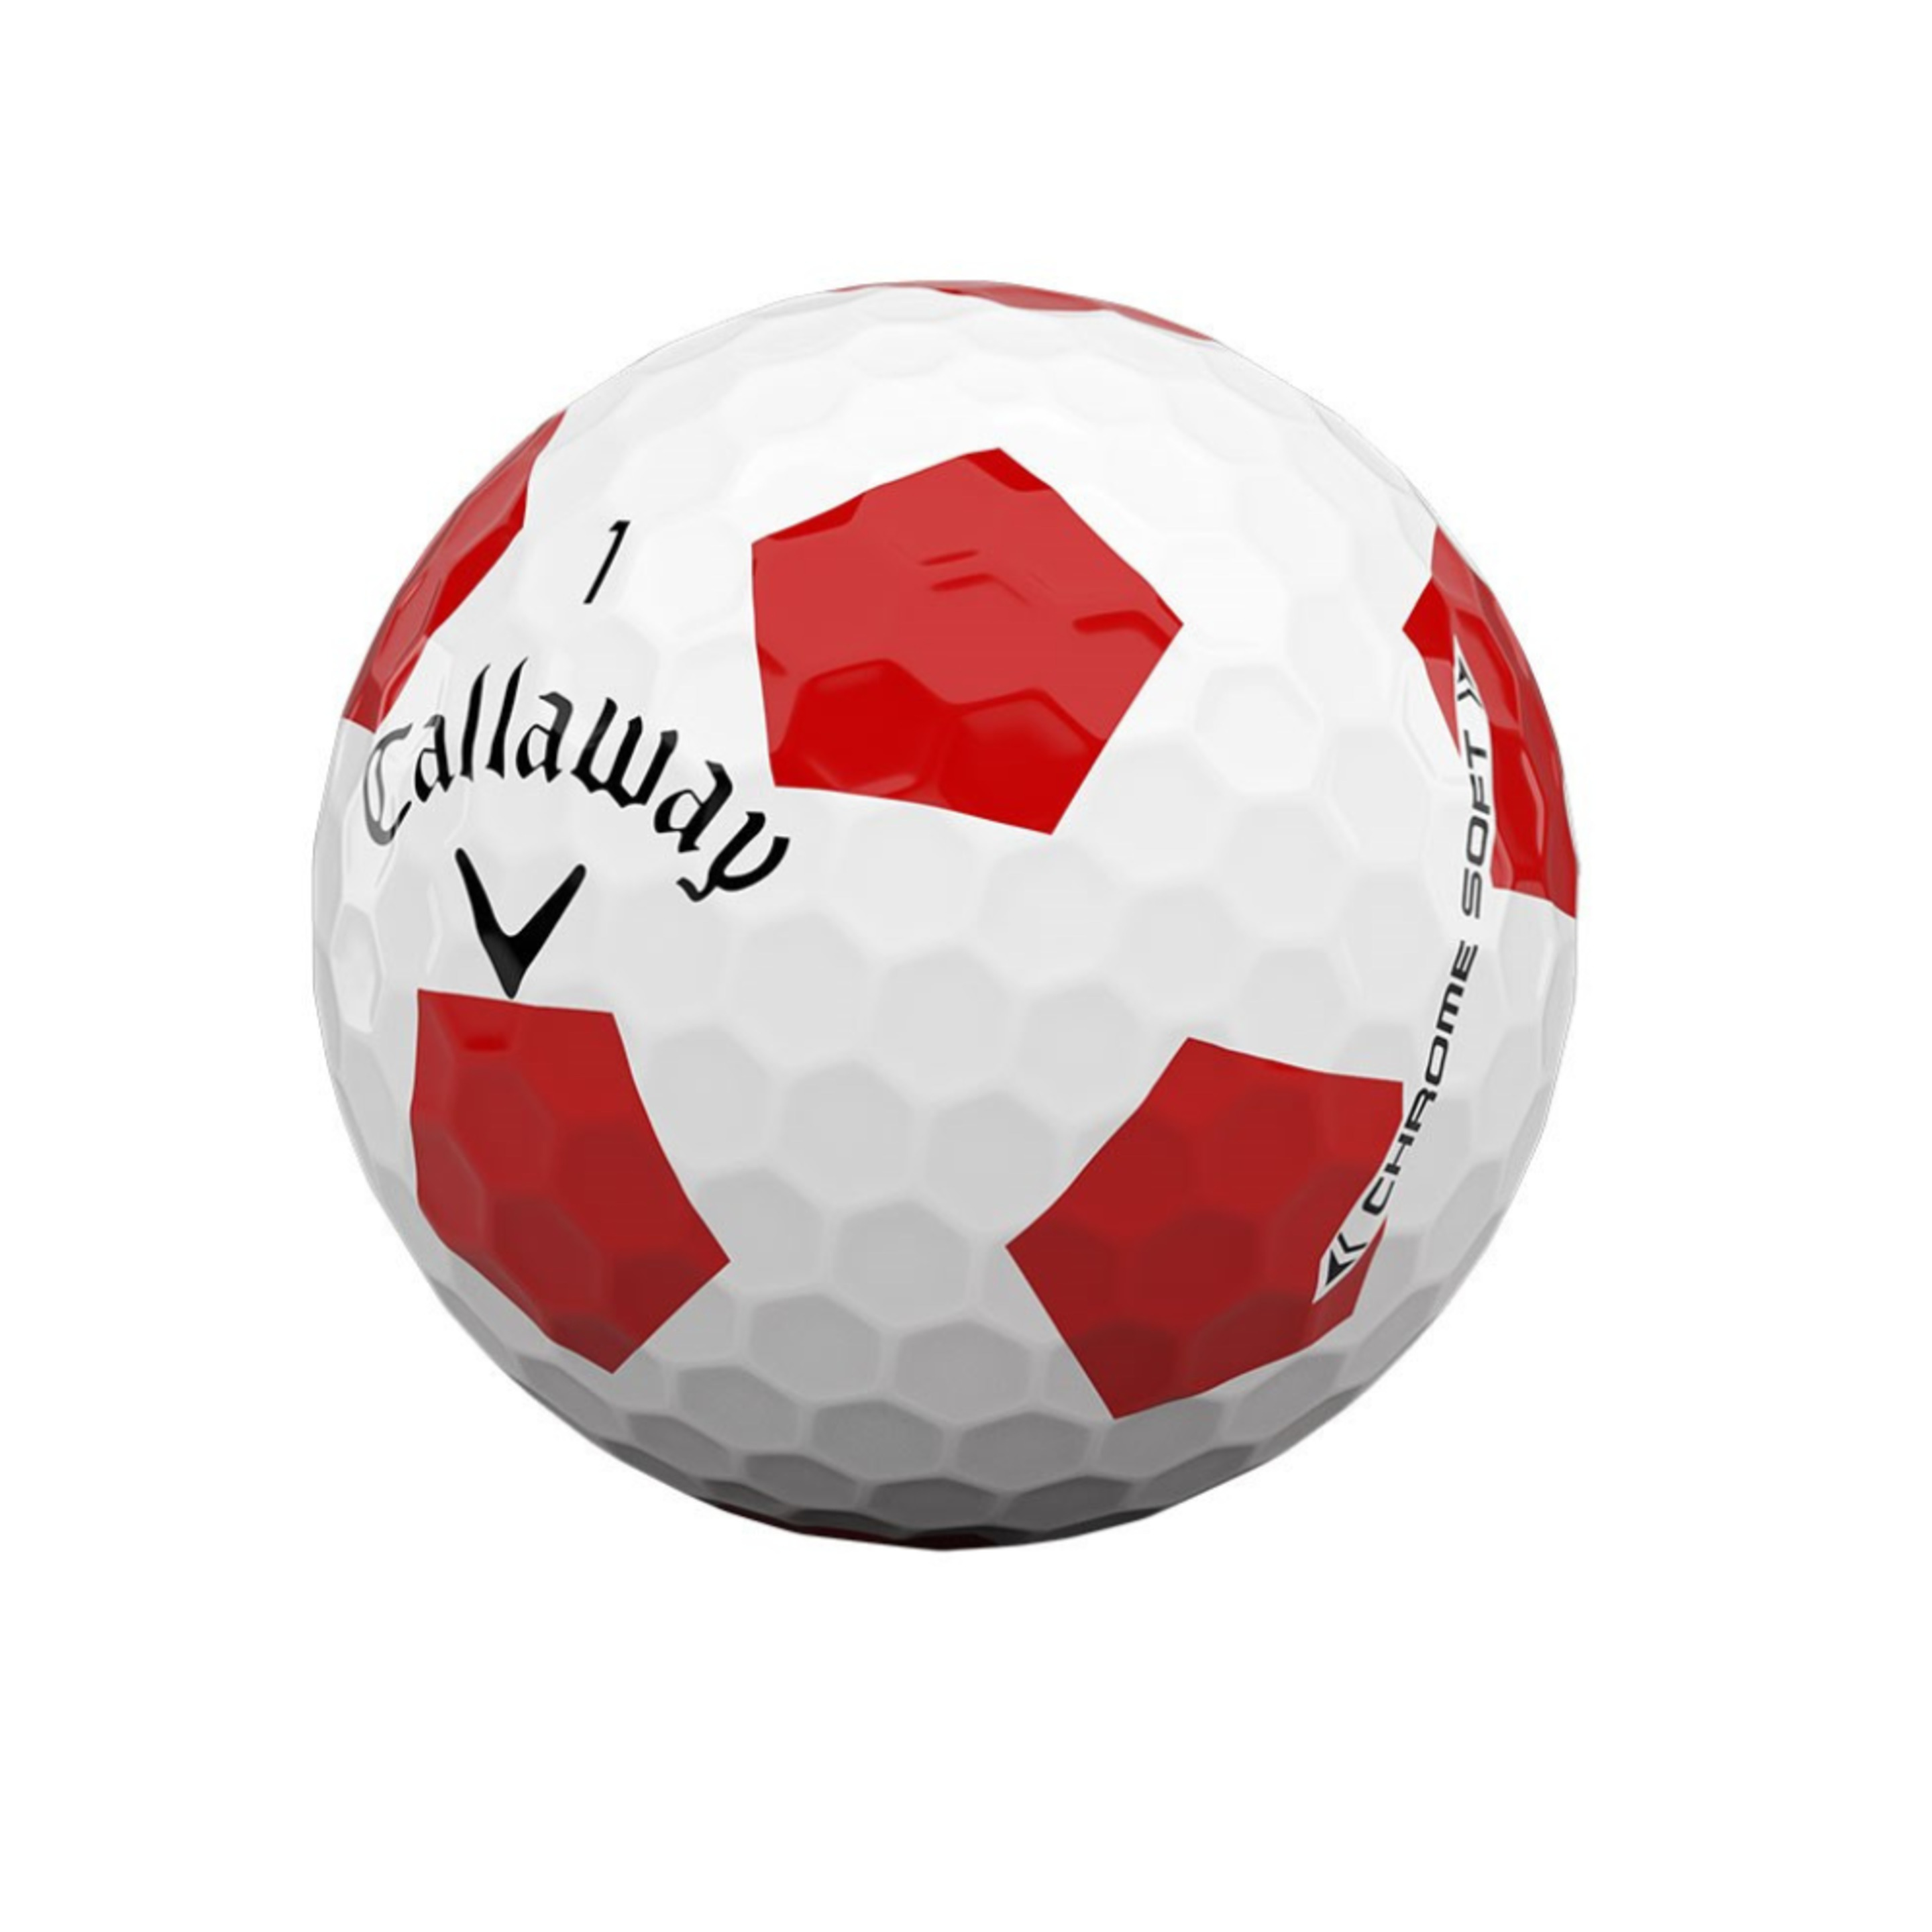 Chrome Soft Truvis - Branco - Bolas de Truvis Soft Chroman são excelentes bolas para todos os golfistas, fãs dos melhores profissionais | Sport Zone MKP